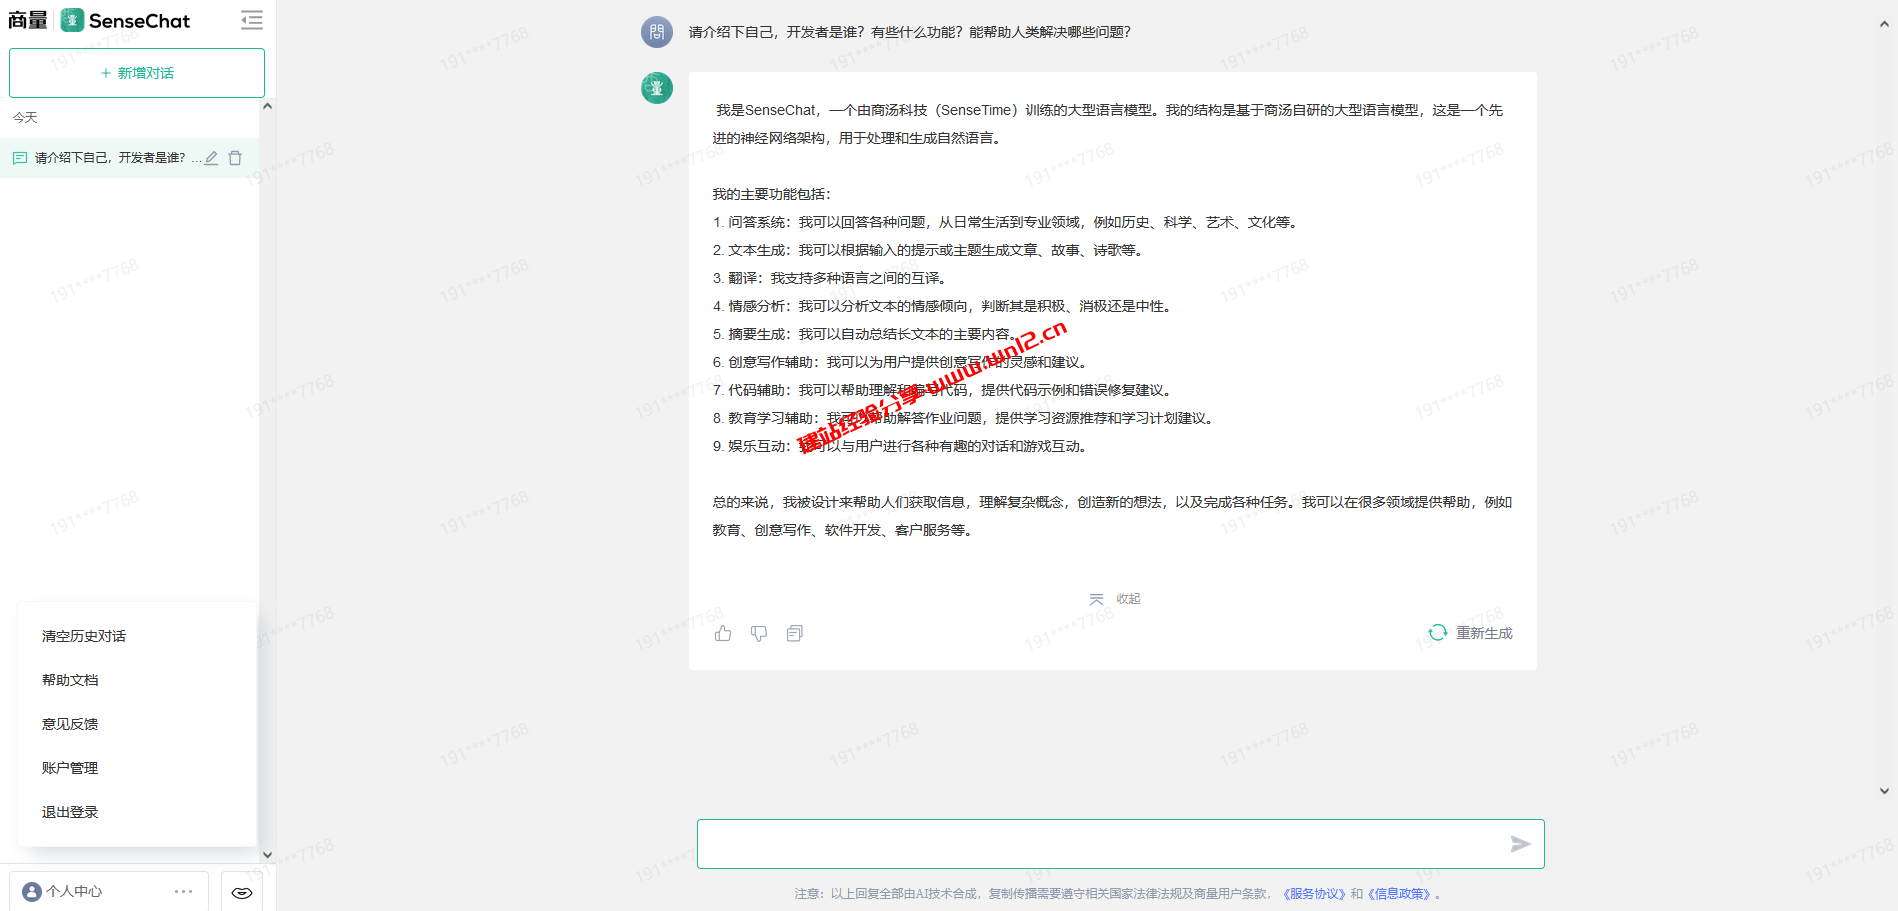 商汤商量大语言模型SenseChat注册即可直接使用，无需审核插图1